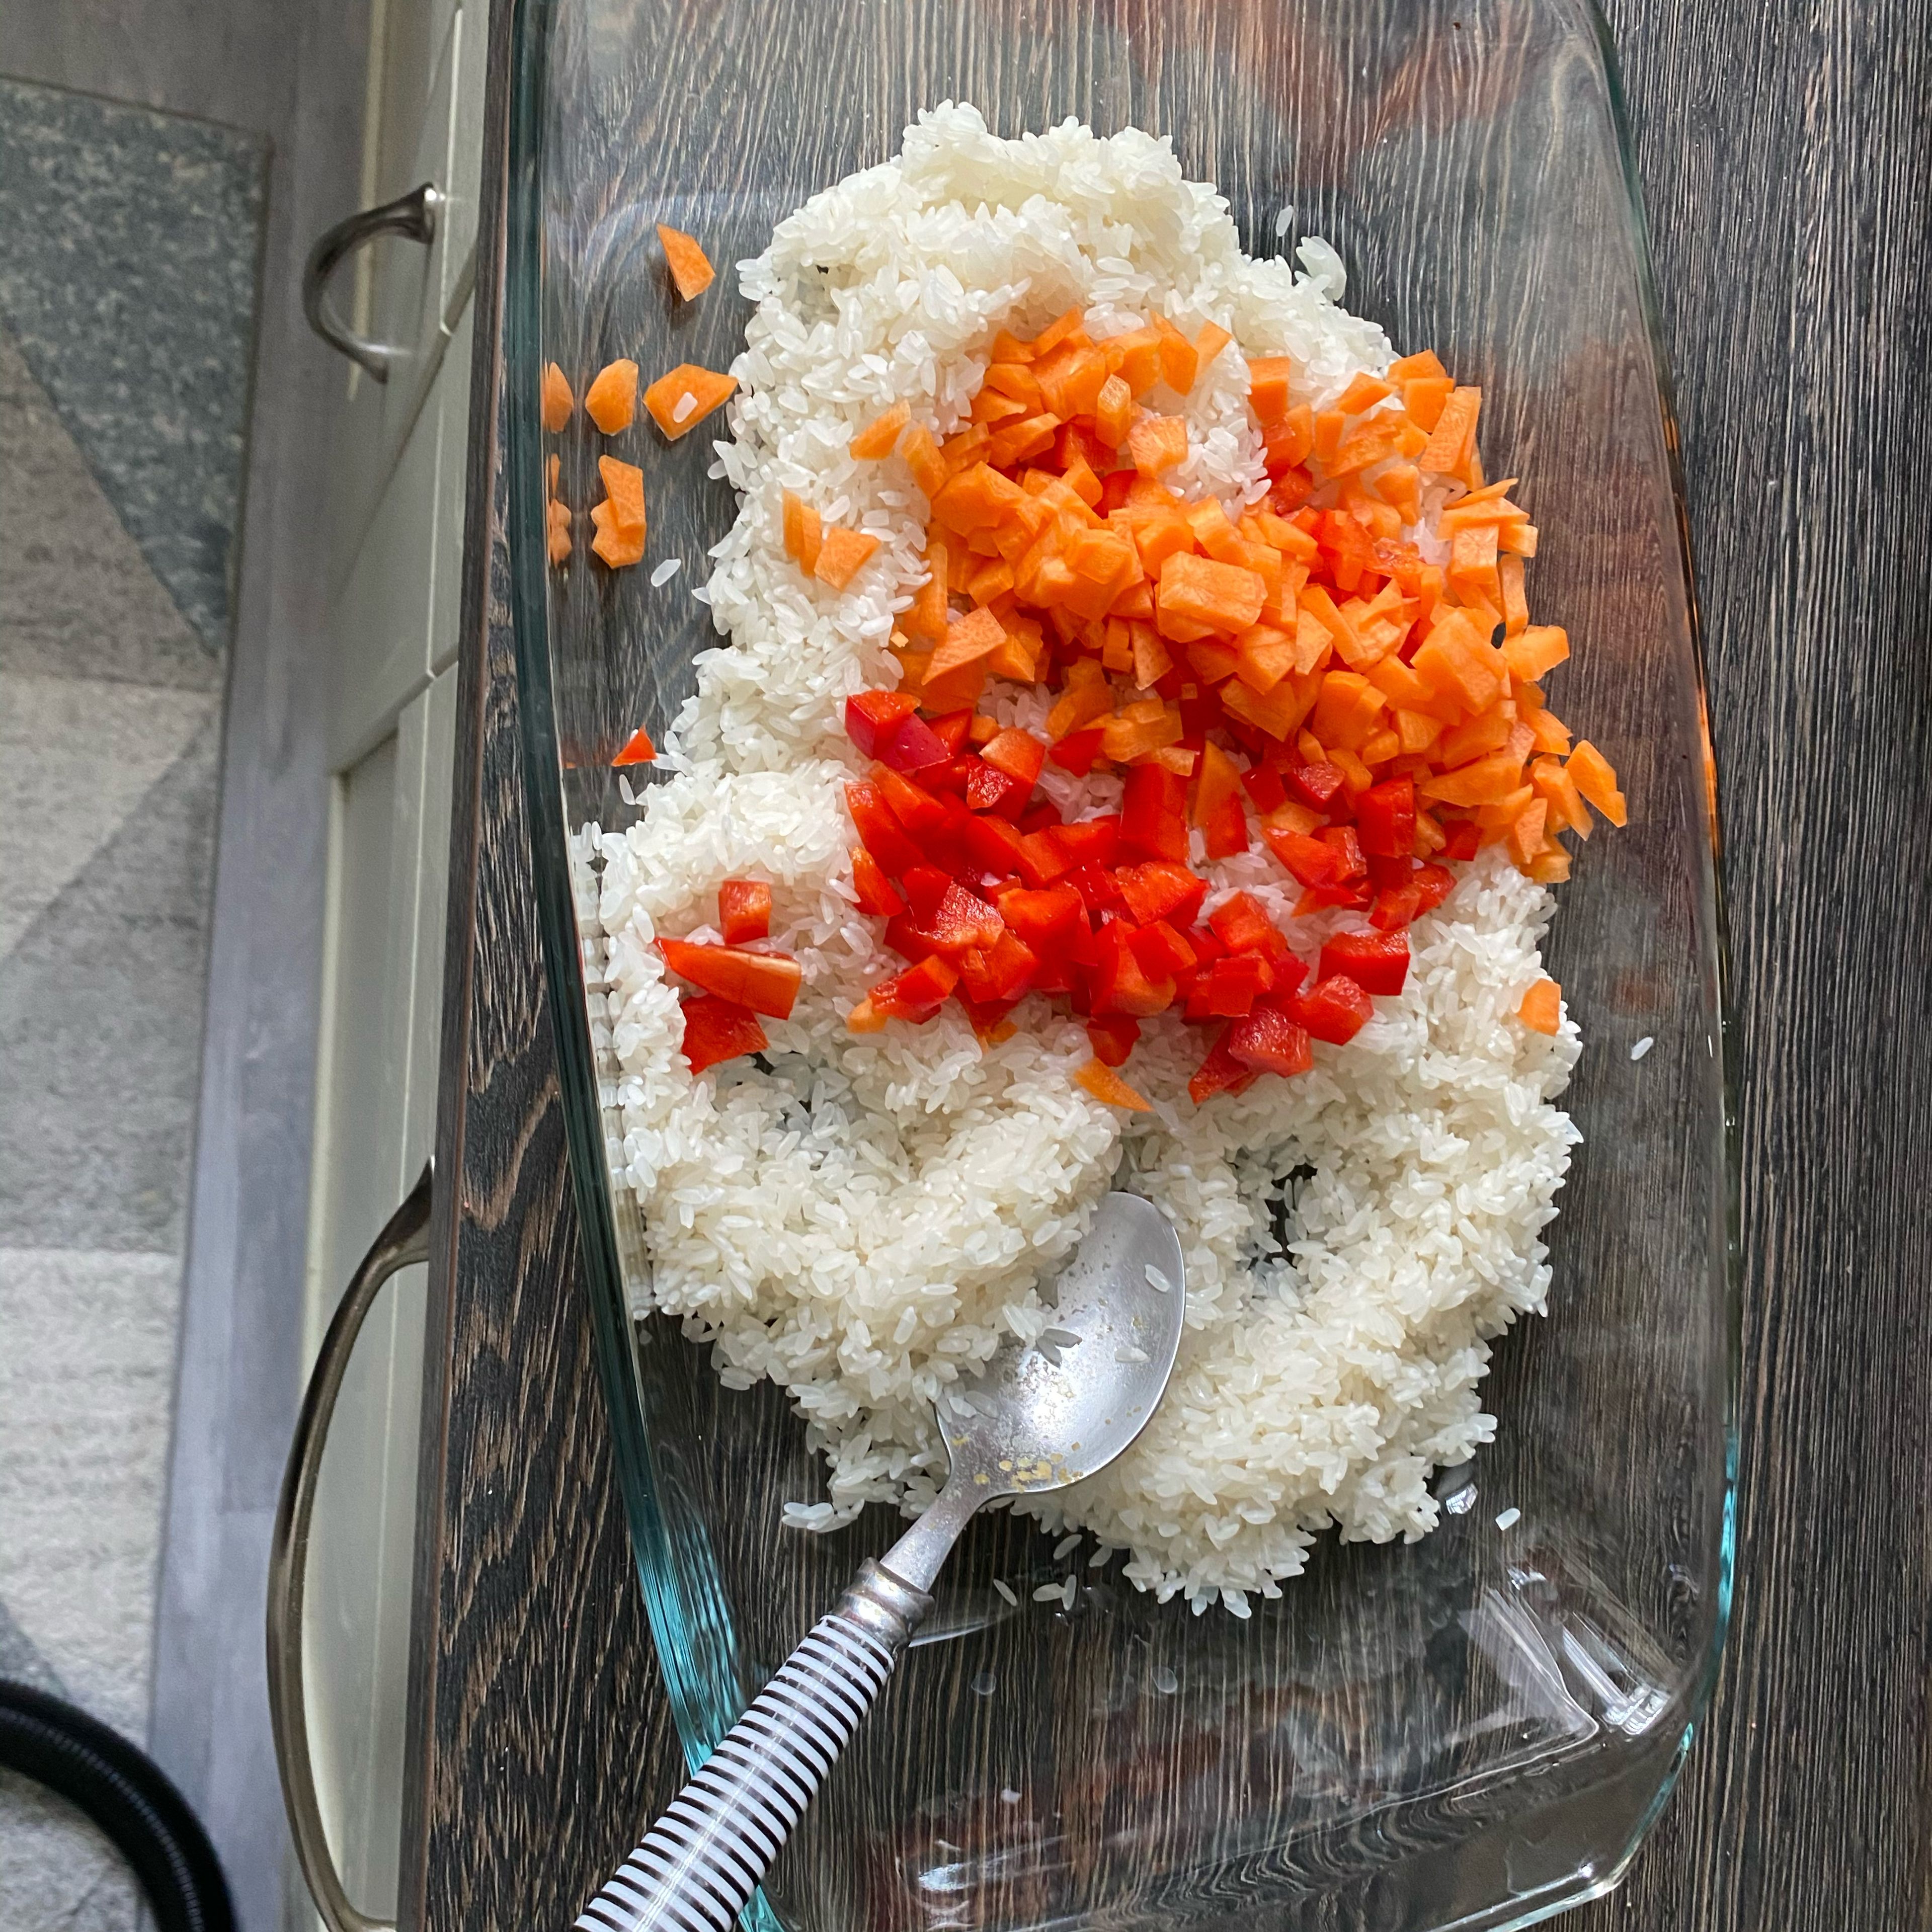 In der Zeit den Reis gründlich waschen damit die Stärke entfernt wird, so klebt der später nicht. Karotte 🥕 und Paprika klein schneide und in eine Auflaufform geben die Gewürze dazu geben ihr könnt mehr oder weniger geben je nach Geschmack. Alles zusammen Mixen